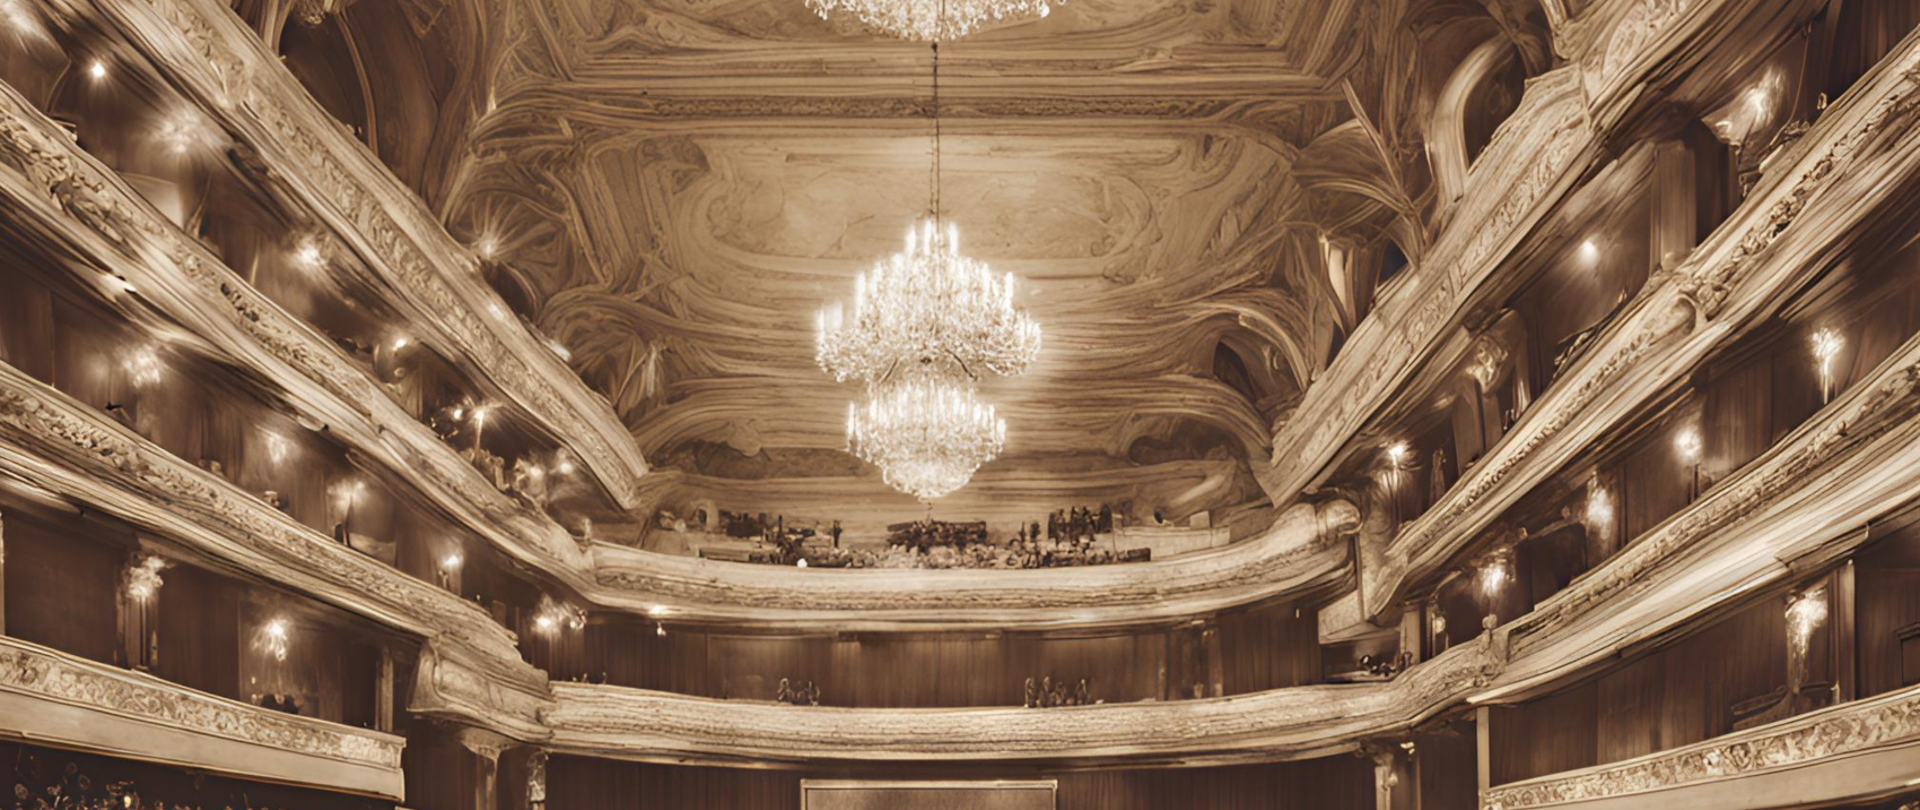 Wnętrze filharmonii w kolorze kremowym, na środku kryształowy żyrandol. Sala jest wypełniona ludźmi i posiada 3 piętra